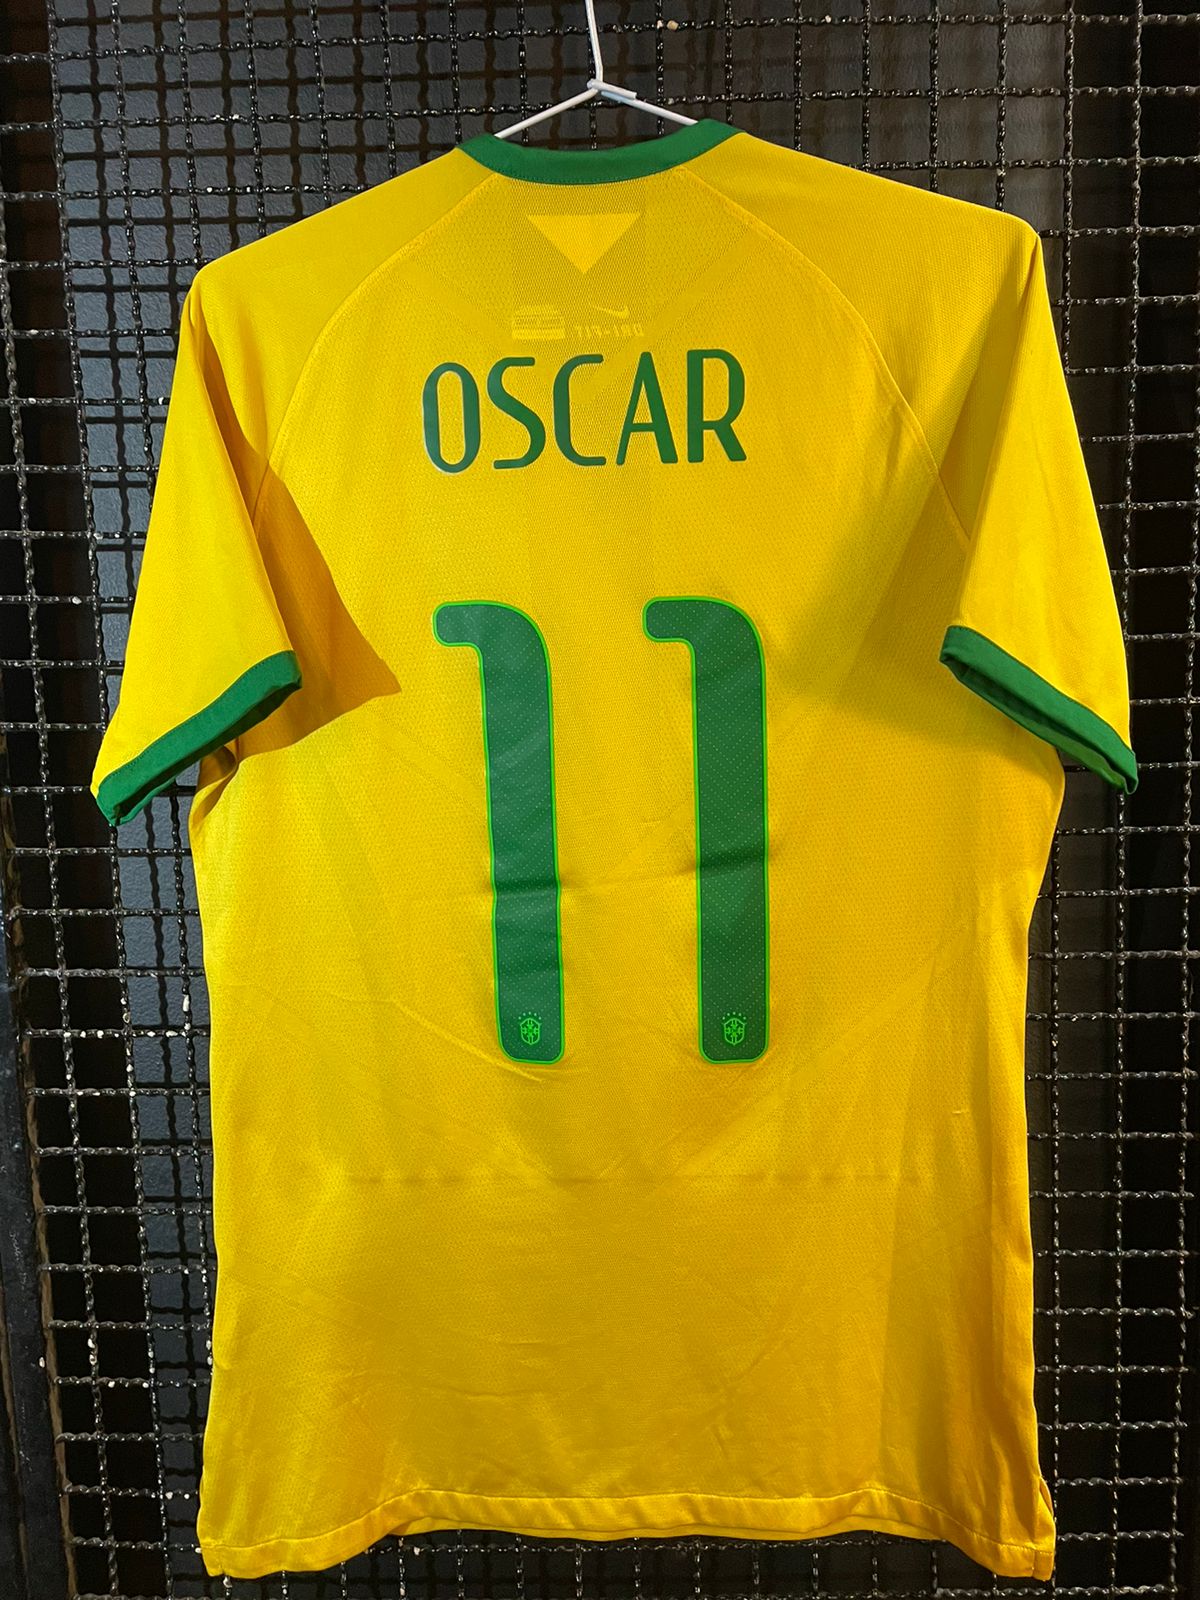 Camisa Brasil Nike 2014 Oscar – Memorias do Esporte